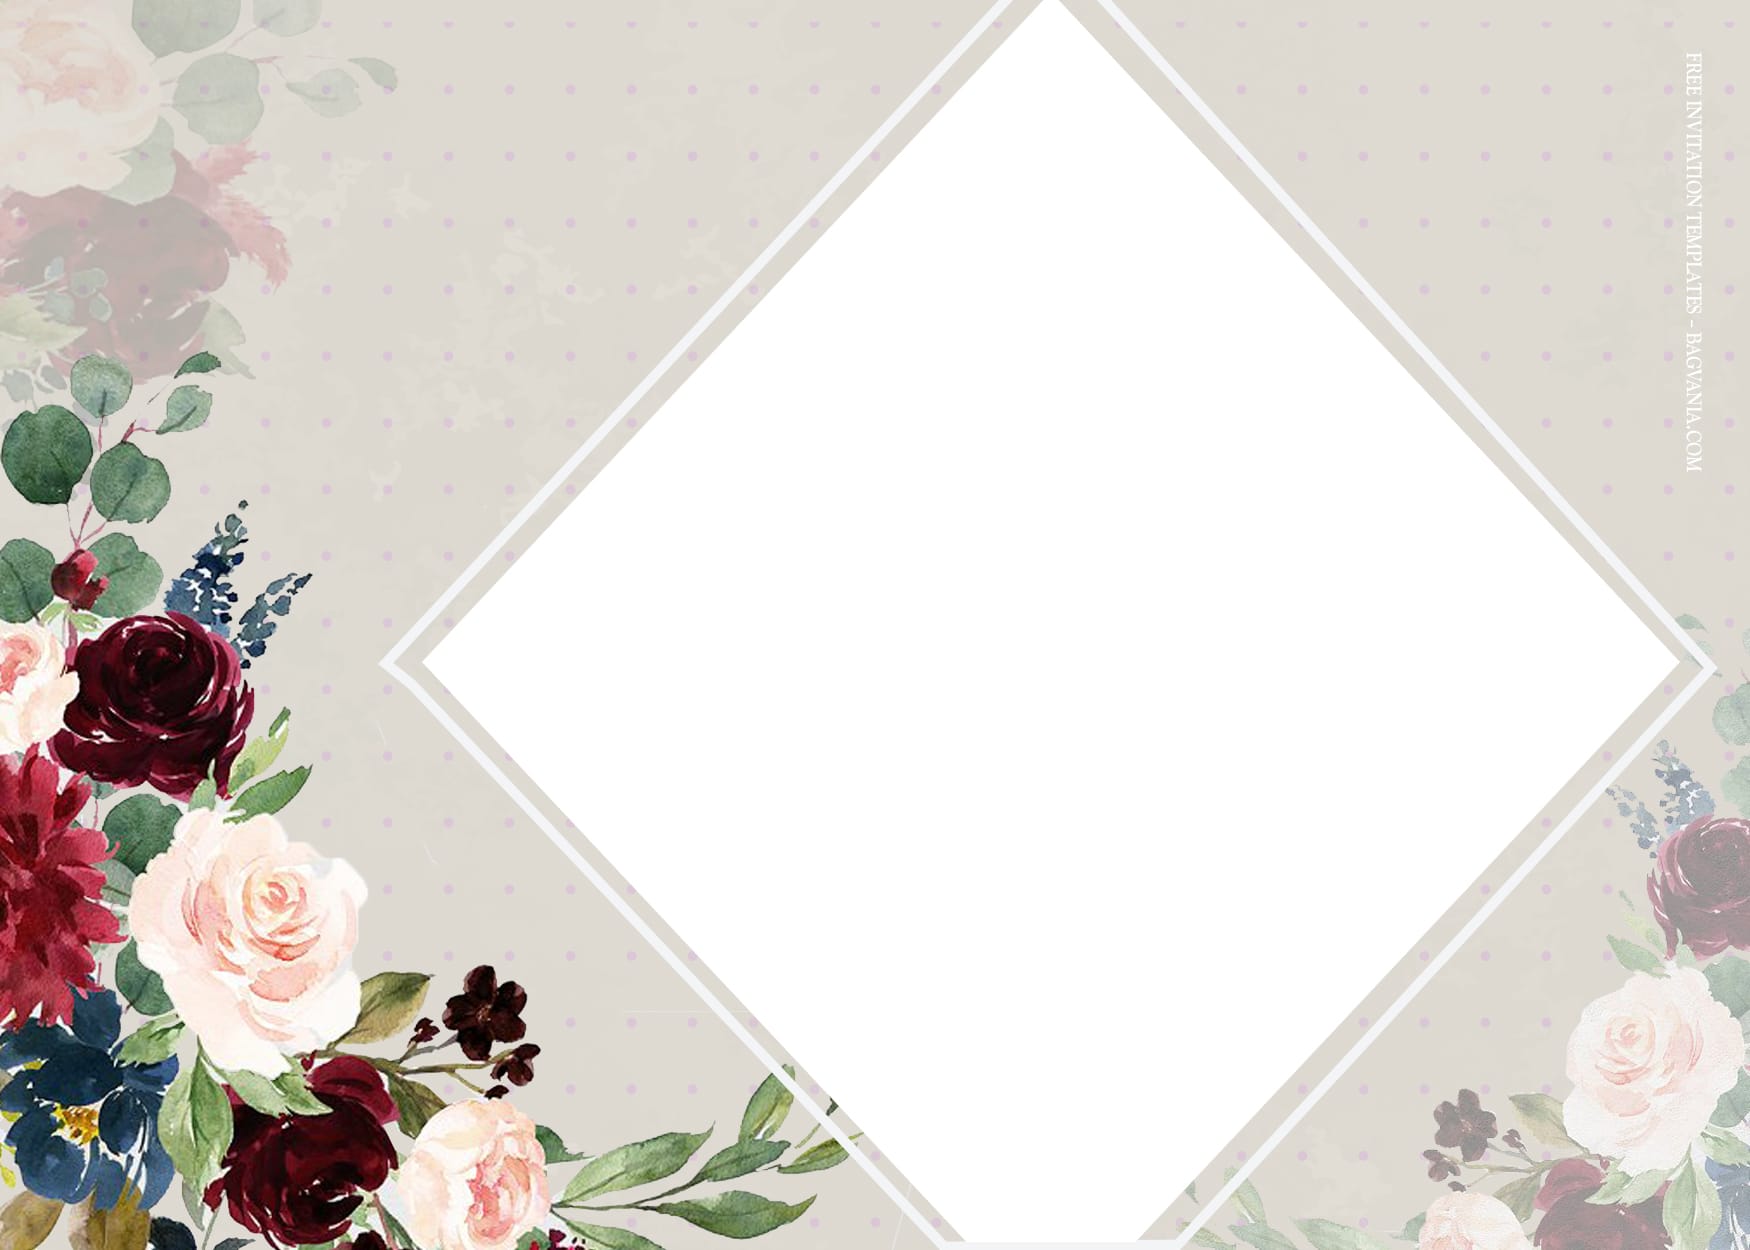 Floral wedding invitation templates: Chào đón khách mời đến dự tiệc cưới của bạn bằng những mẫu thiết kế thư mời tuyệt đẹp của chúng tôi. Với nhiều lựa chọn trong số các mẫu hoa văn, các kiểu chữ cùng màu sắc phù hợp, bạn chắc chắn sẽ tạo nên một cảm giác mới lạ và tươi trẻ cho đám cưới của mình.